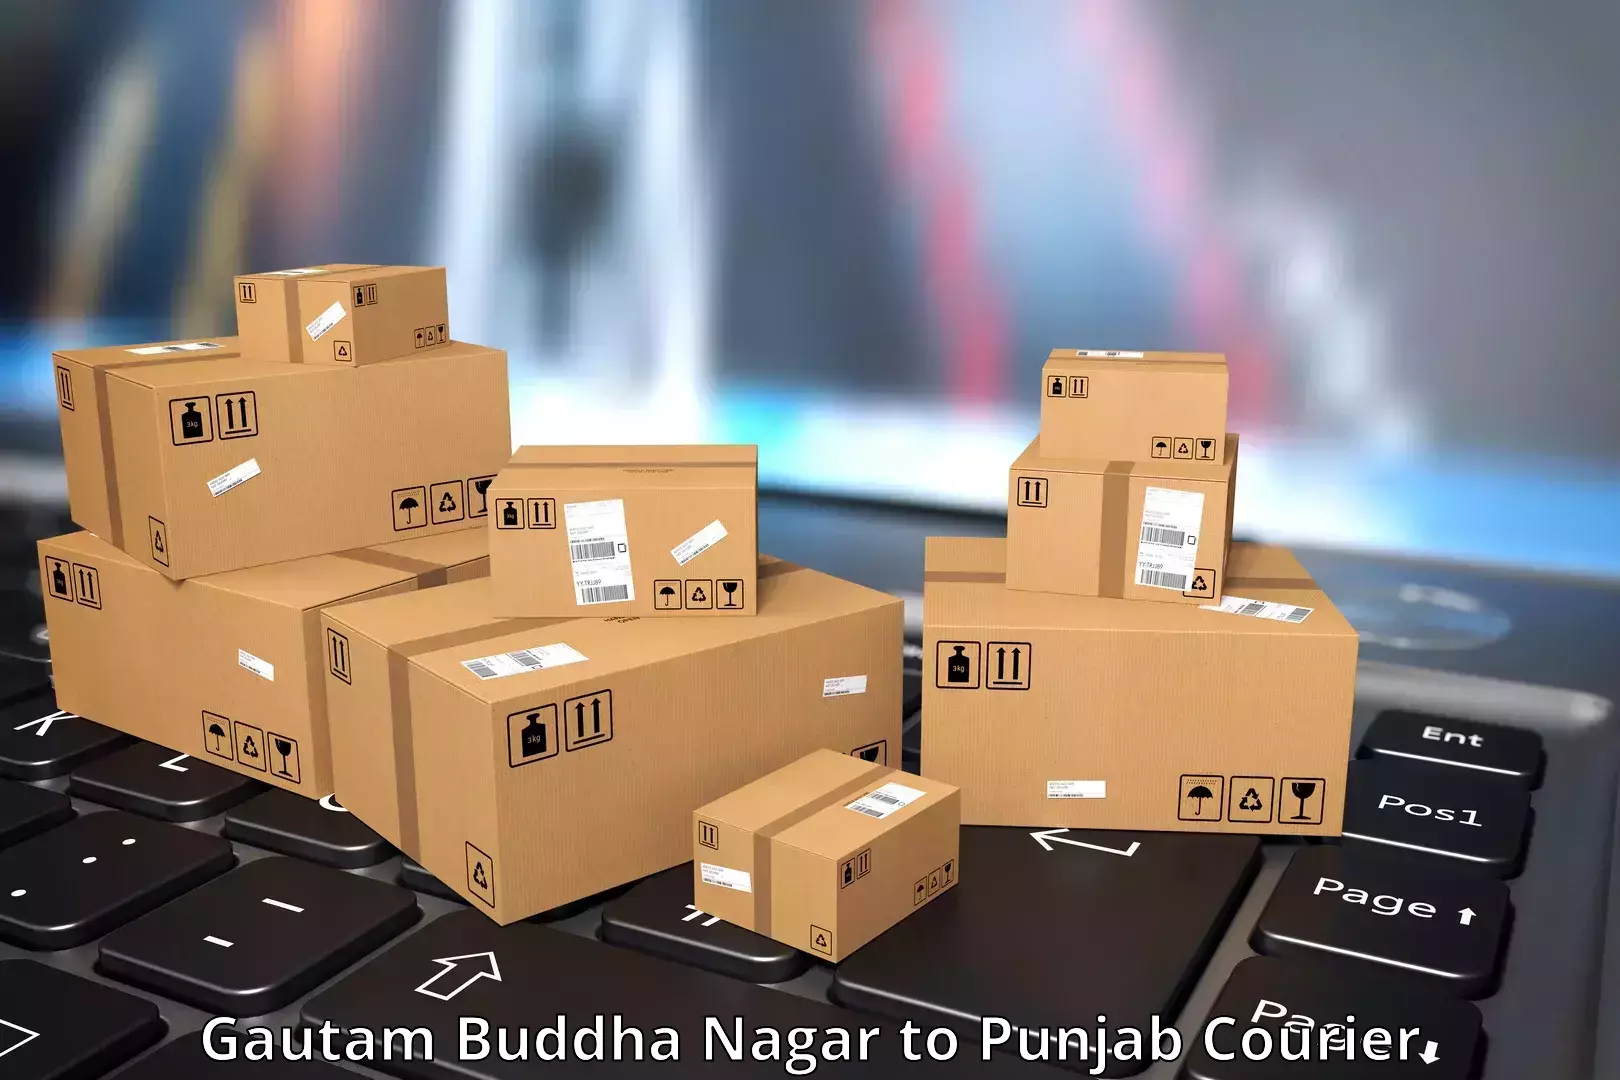 Speedy delivery service Gautam Buddha Nagar to Garhshankar